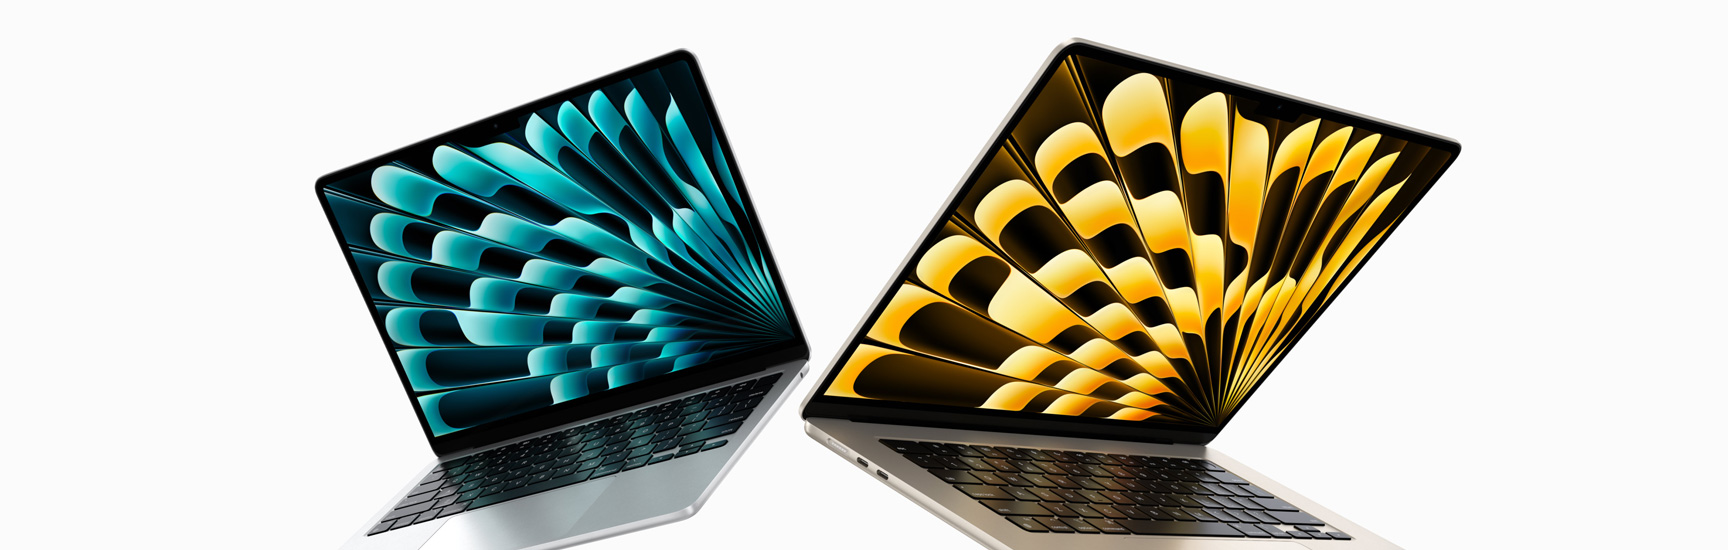 略微打開的銀色與星光色 13 吋與 15 吋 MacBook Air 機型正面圖，展示不同的顯示器尺寸。